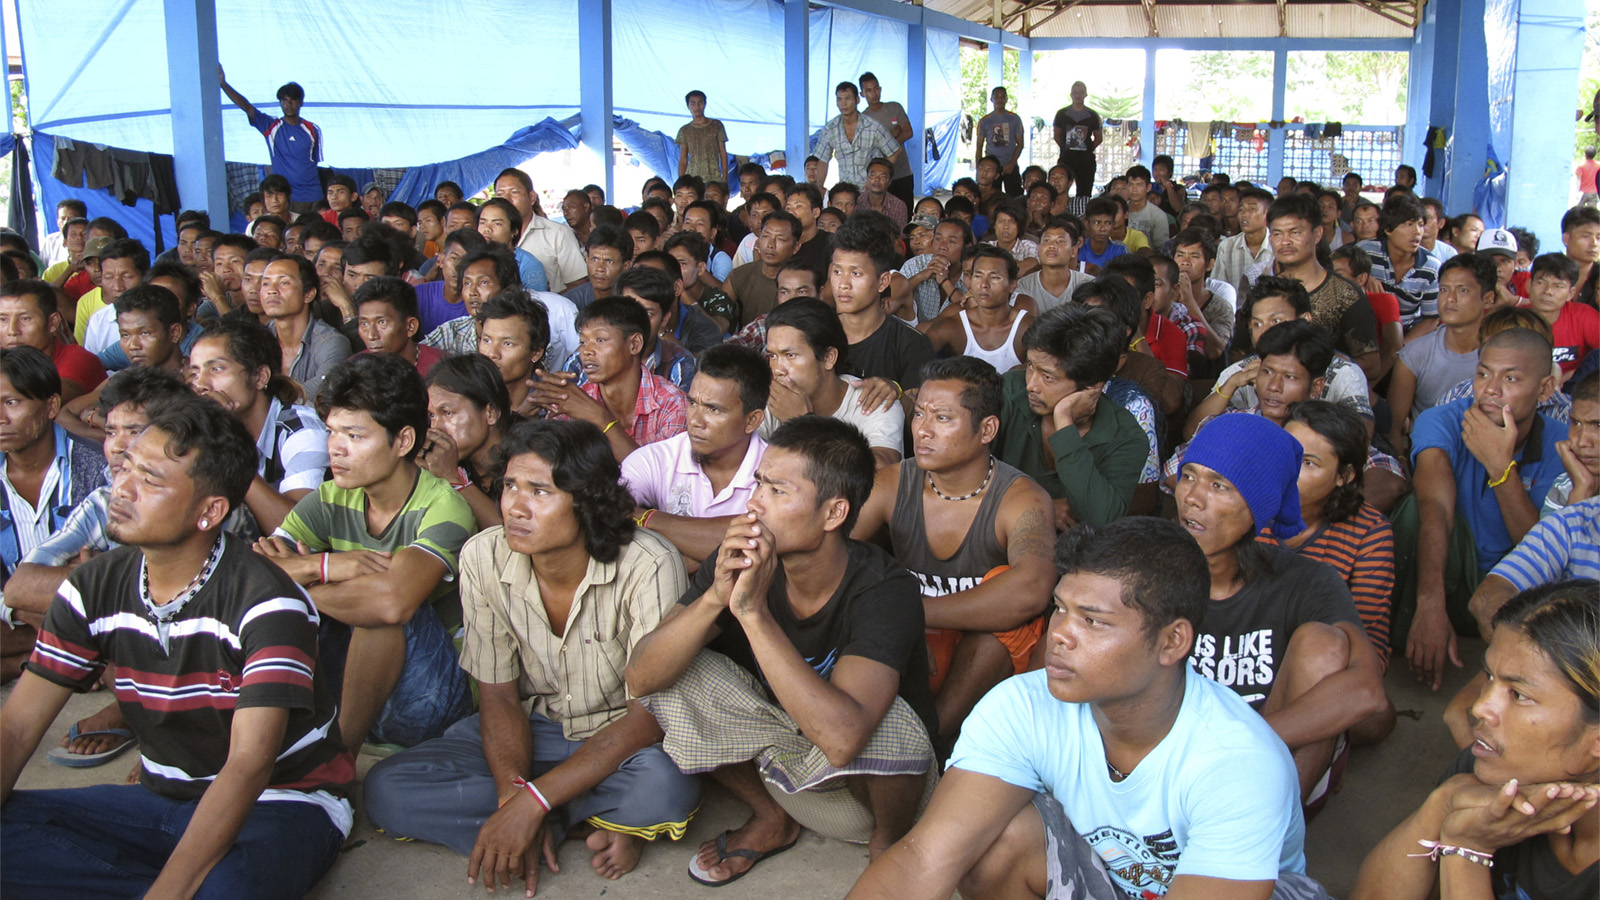 דייגים אינדונזים שחולצו מעבדות (צילום: AP Photo/Margie Mason).